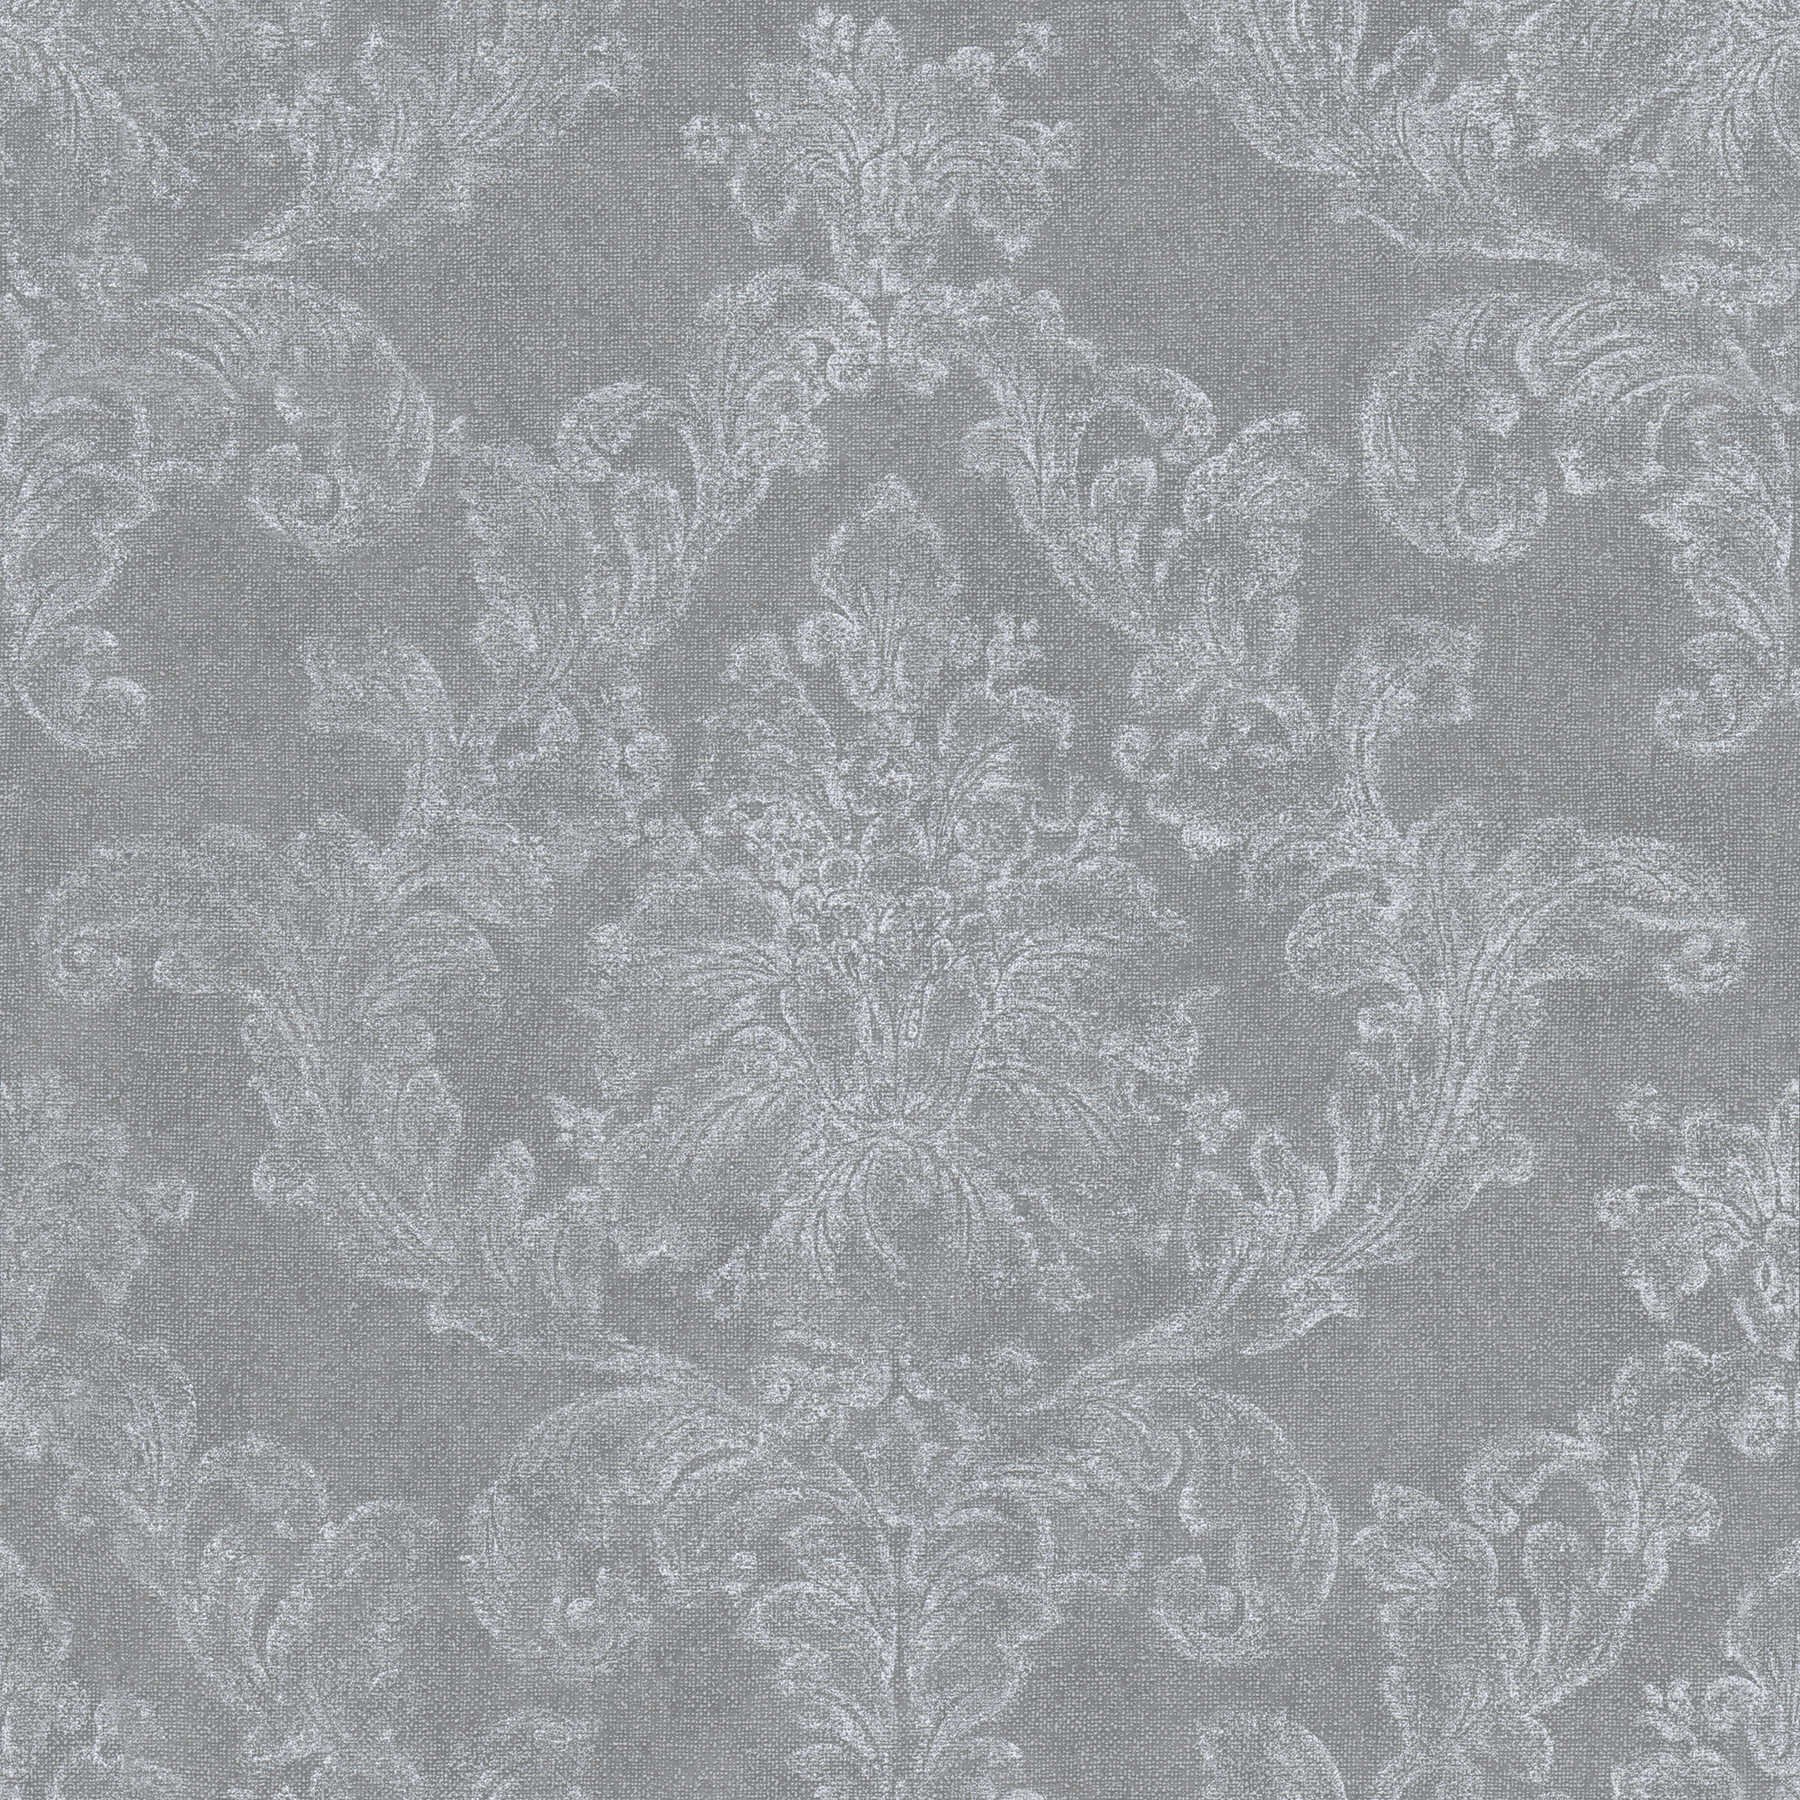 Carta da parati ornamentale in stile country con aspetto tessile - grigio, bianco
